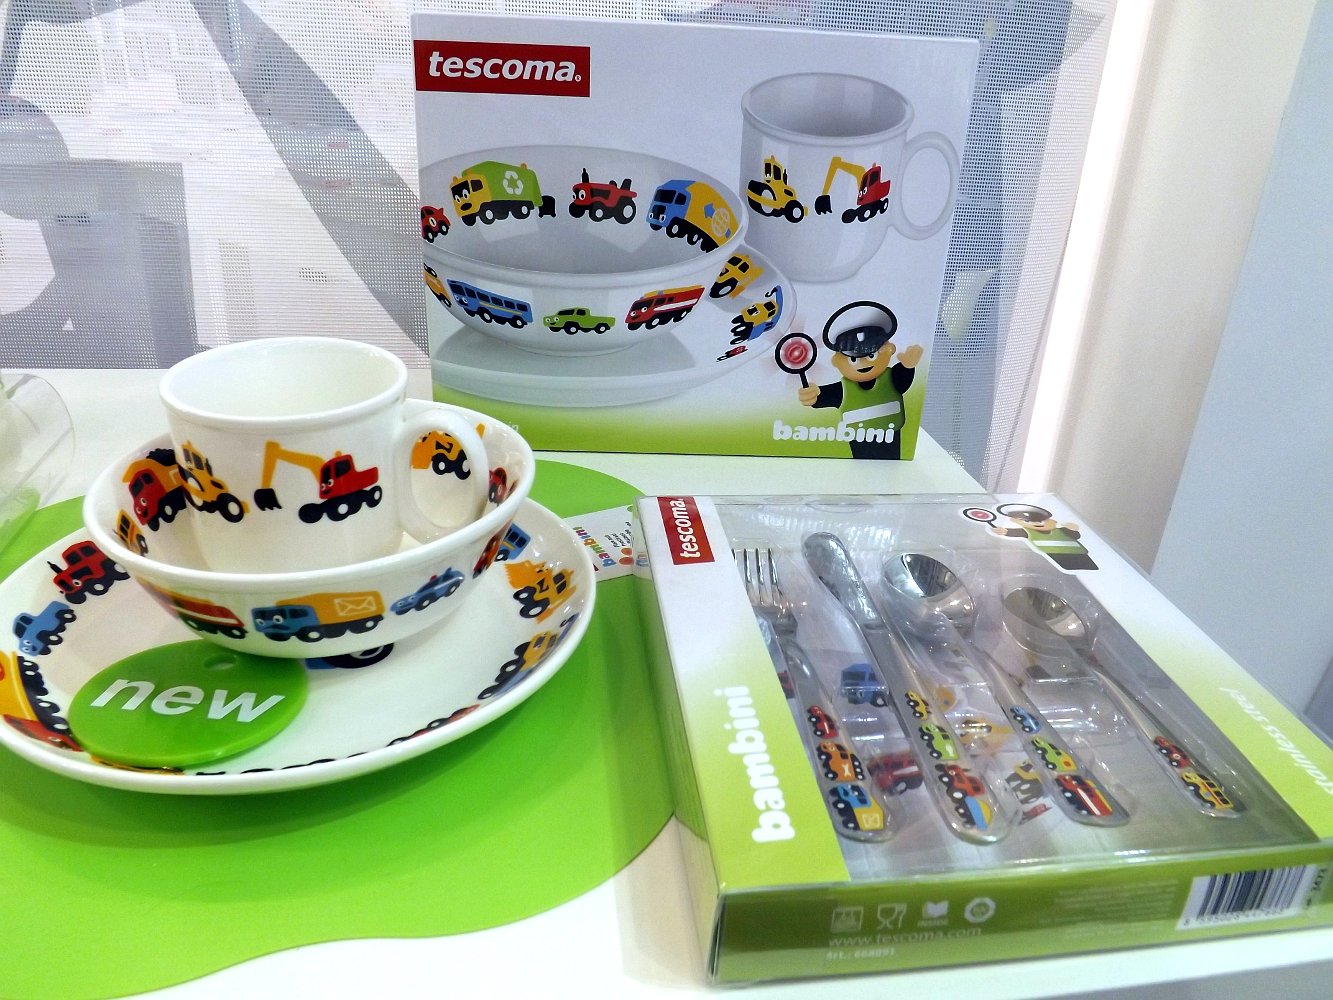 Детская посуда от Tescoma. Выставка HouseHold Expo в Москве, сентябрь 2013 г.